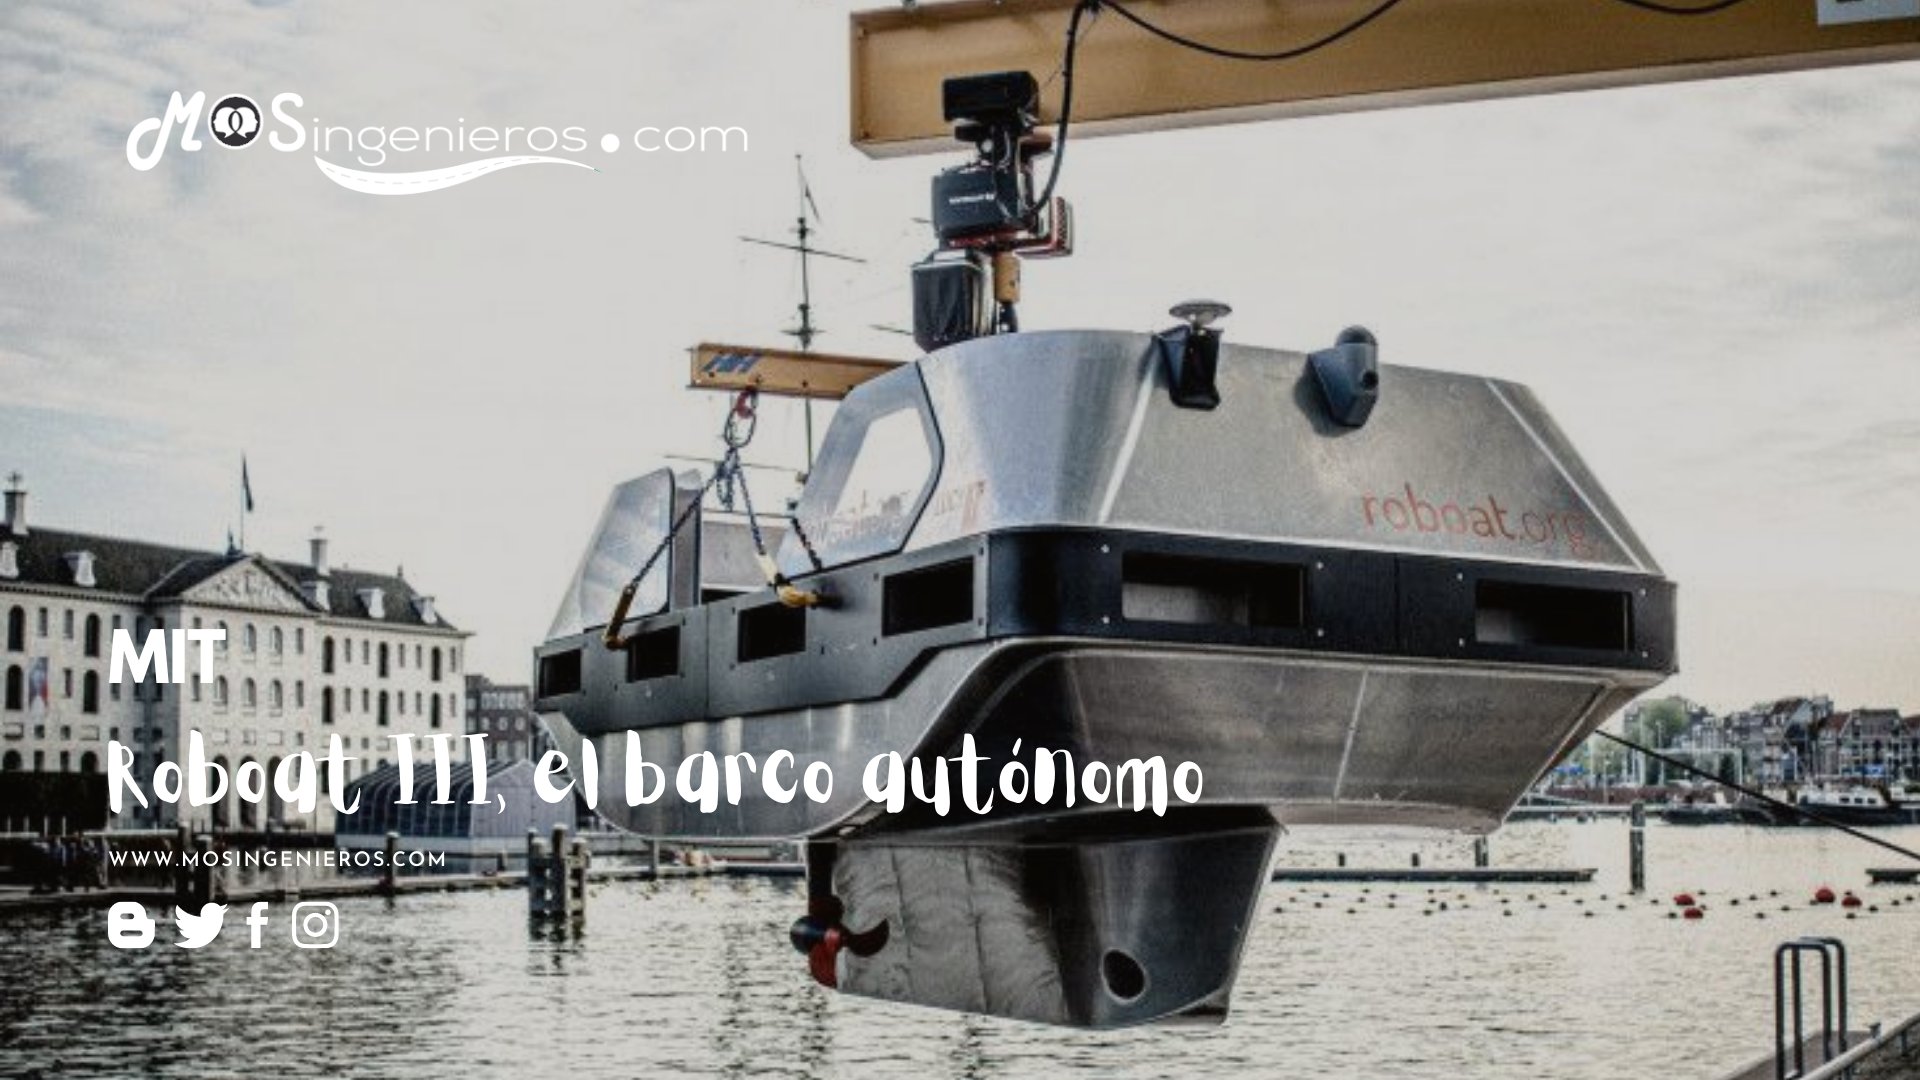 Roboat III. El barco autónomo que recorre los canales de Ámsterdam